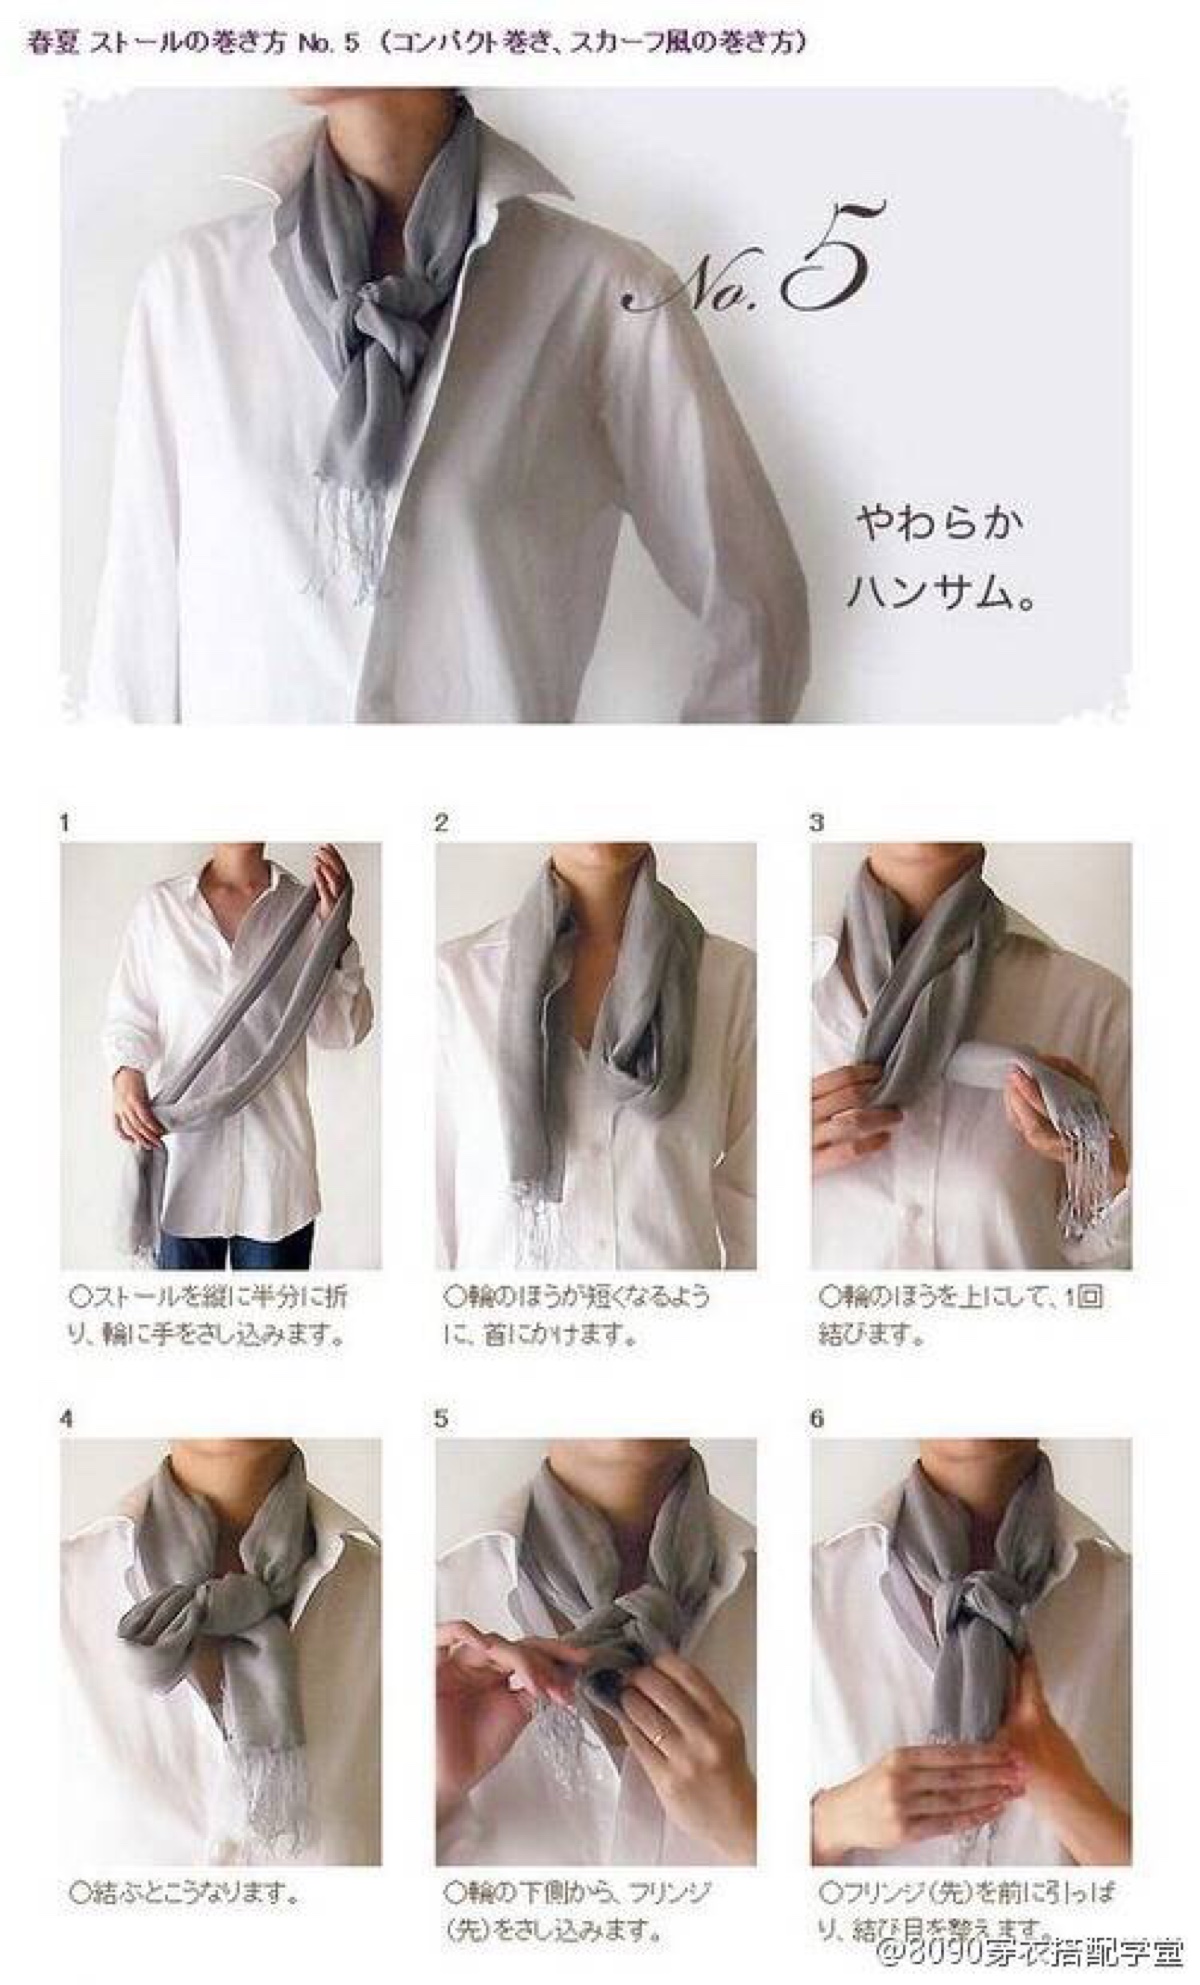 围巾系法